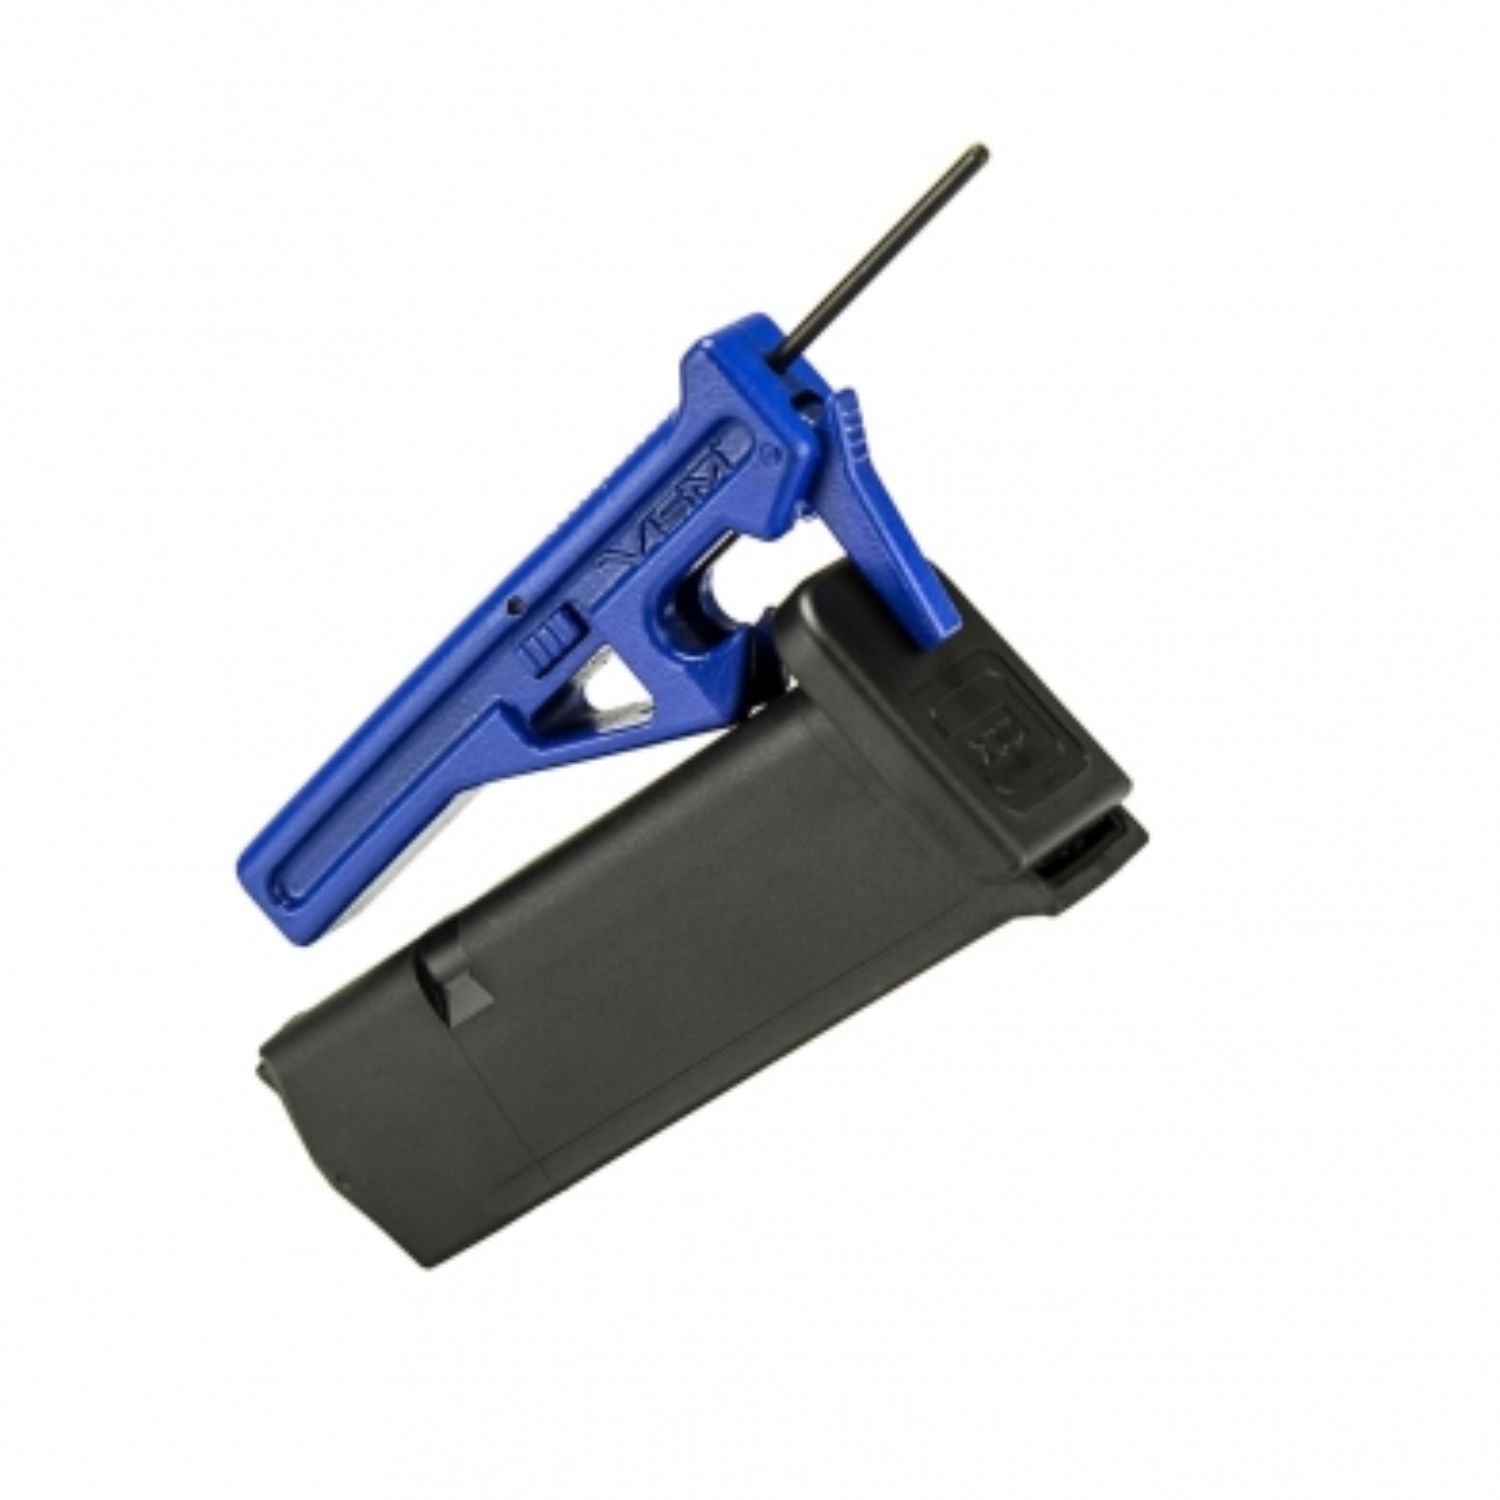 NcStar VTGLK5 G5+ Pocket Tool Black/Blue Steel Compatible w/Glock